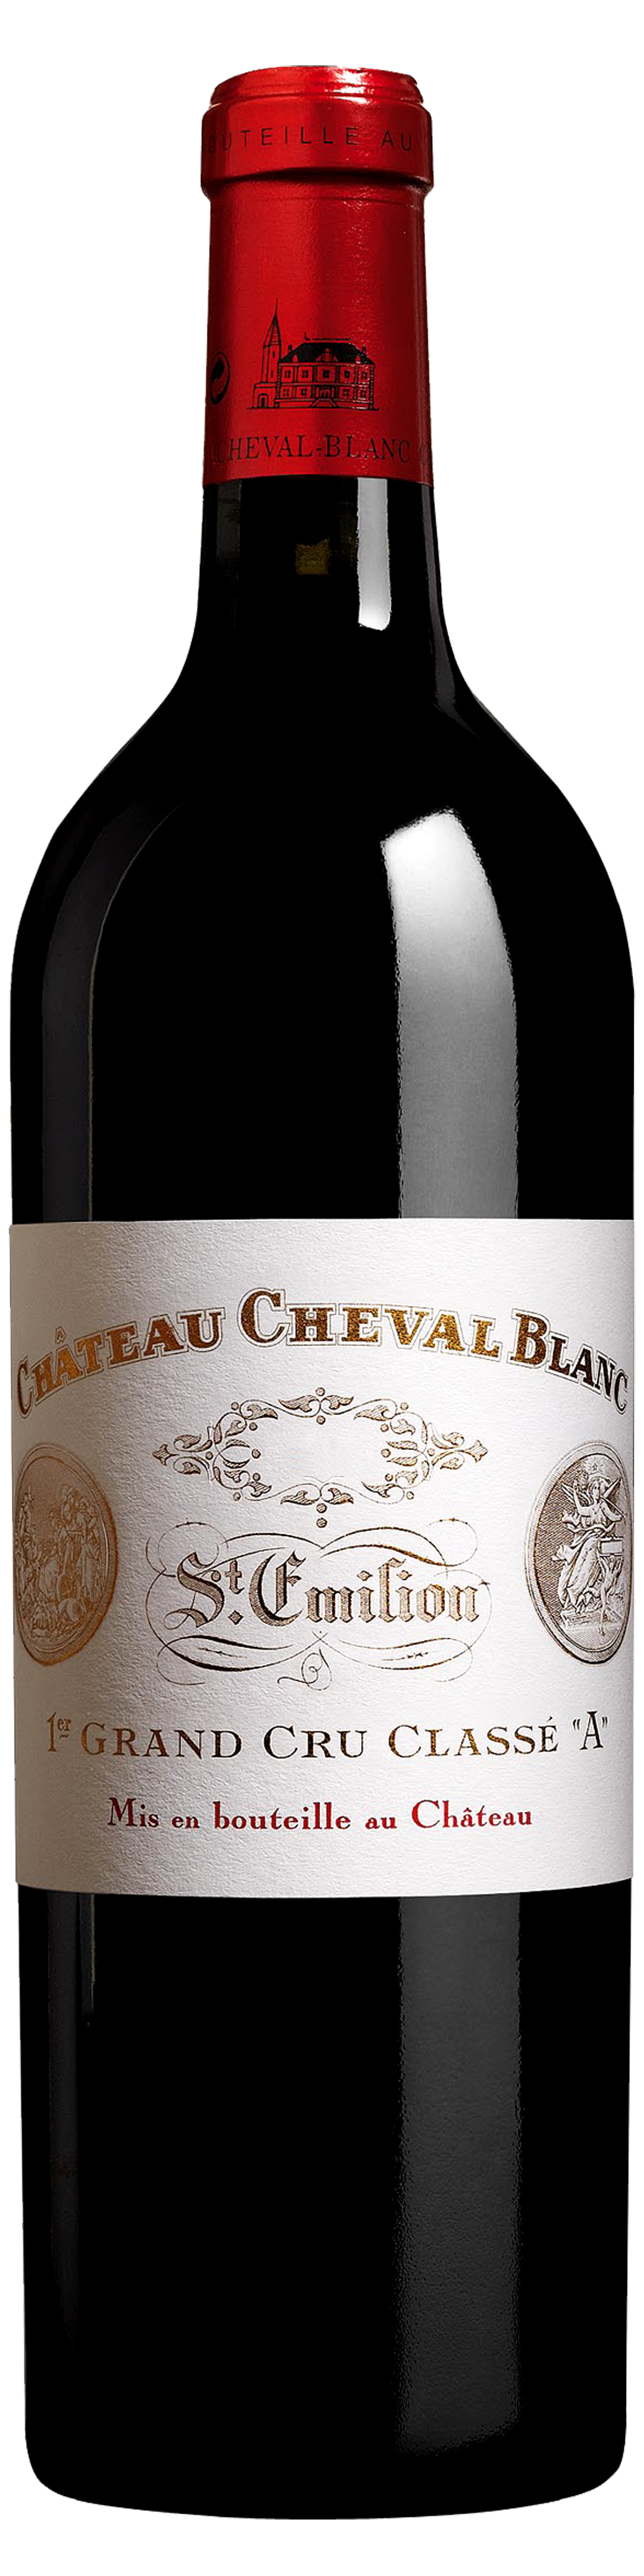 Bottle shot of 2001 Château Cheval Blanc, 1er Gr Cru Classé St Emilion